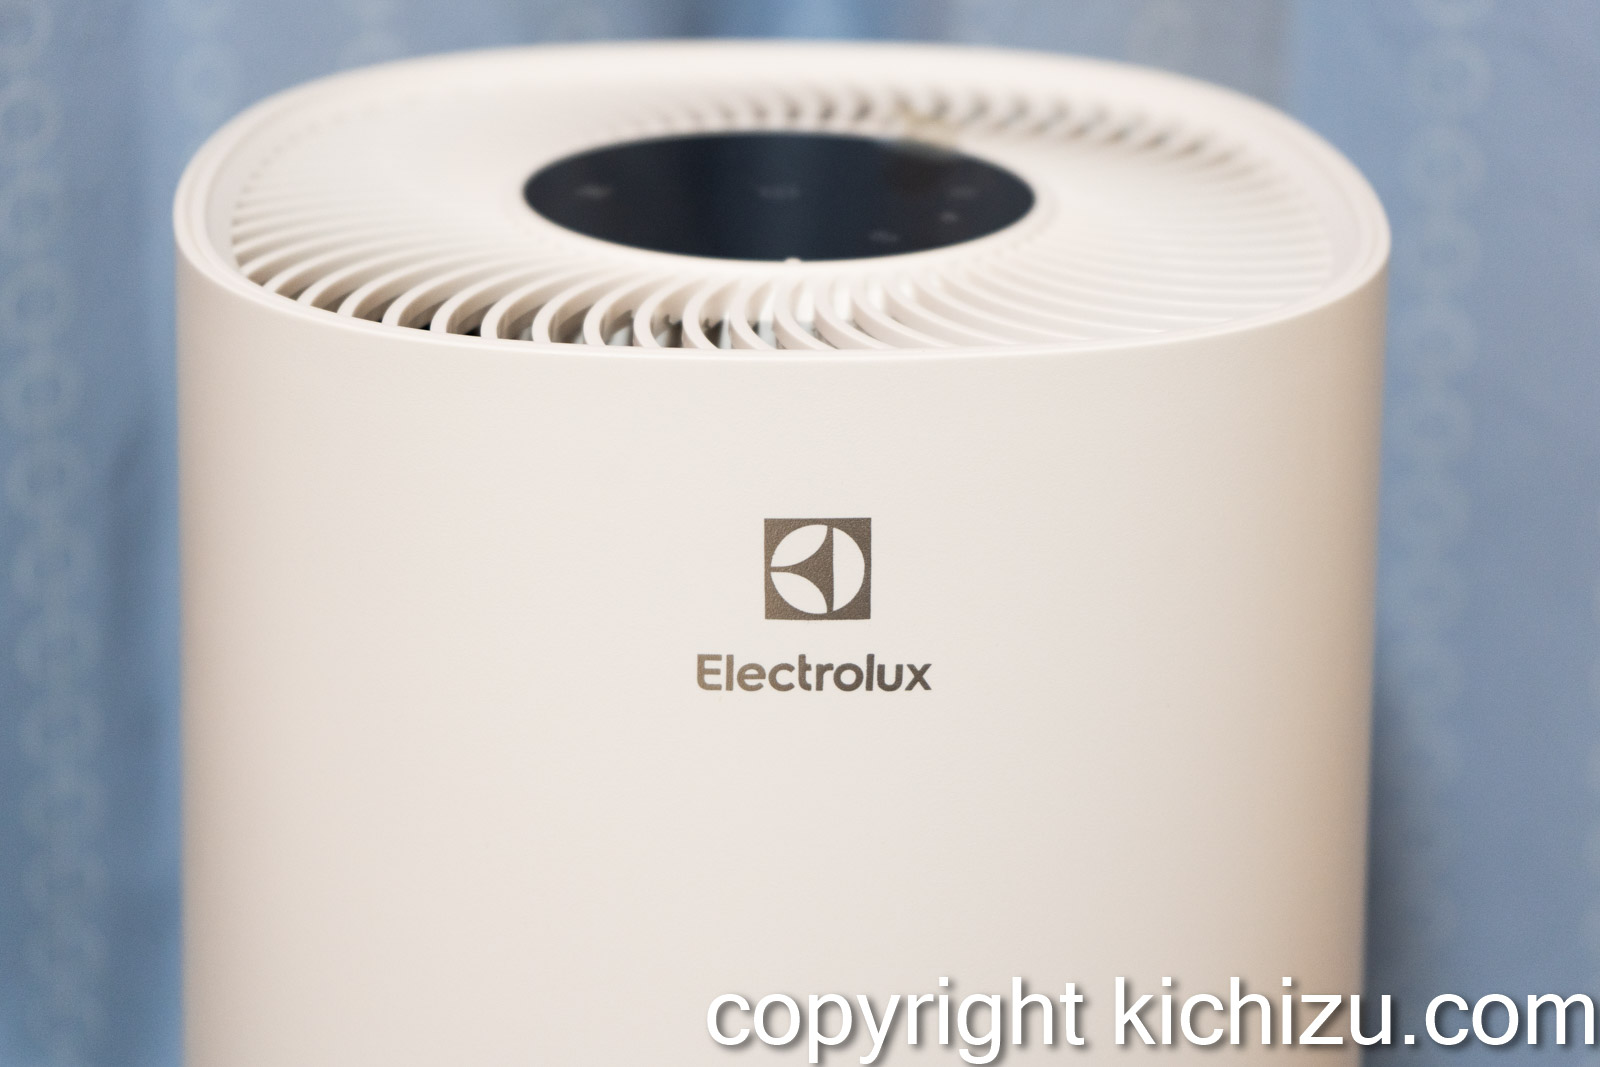 冷暖房/空調 空気清浄器 おしゃれ海外家電メーカーElectroluxの空気清浄機 Flow A3 UVを購入 